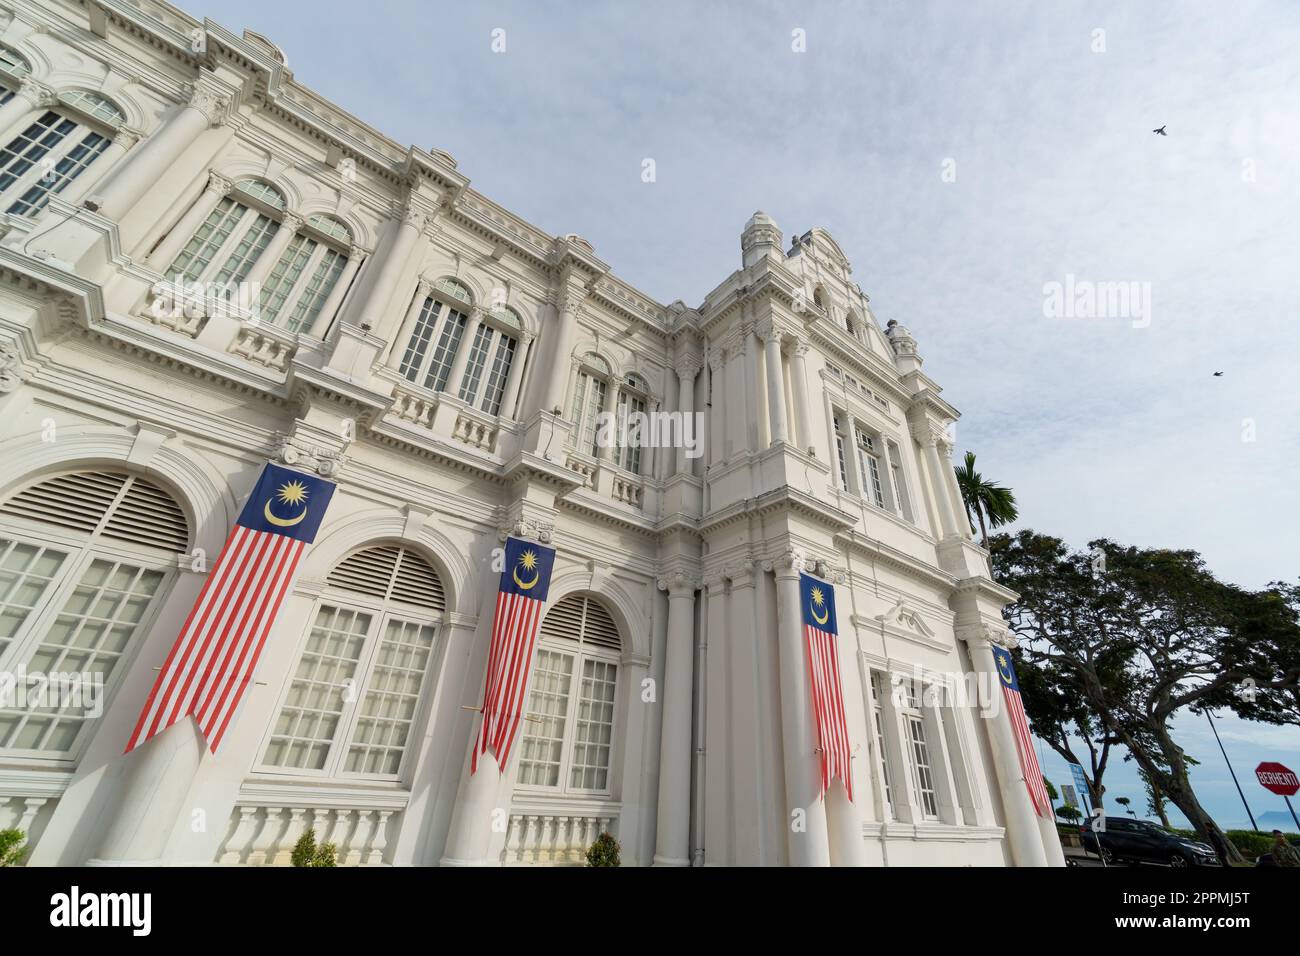 L'hôtel de ville de Penang décoré avec le drapeau de la Malaisie Jalur Gemilang célèbre Merdeka Banque D'Images